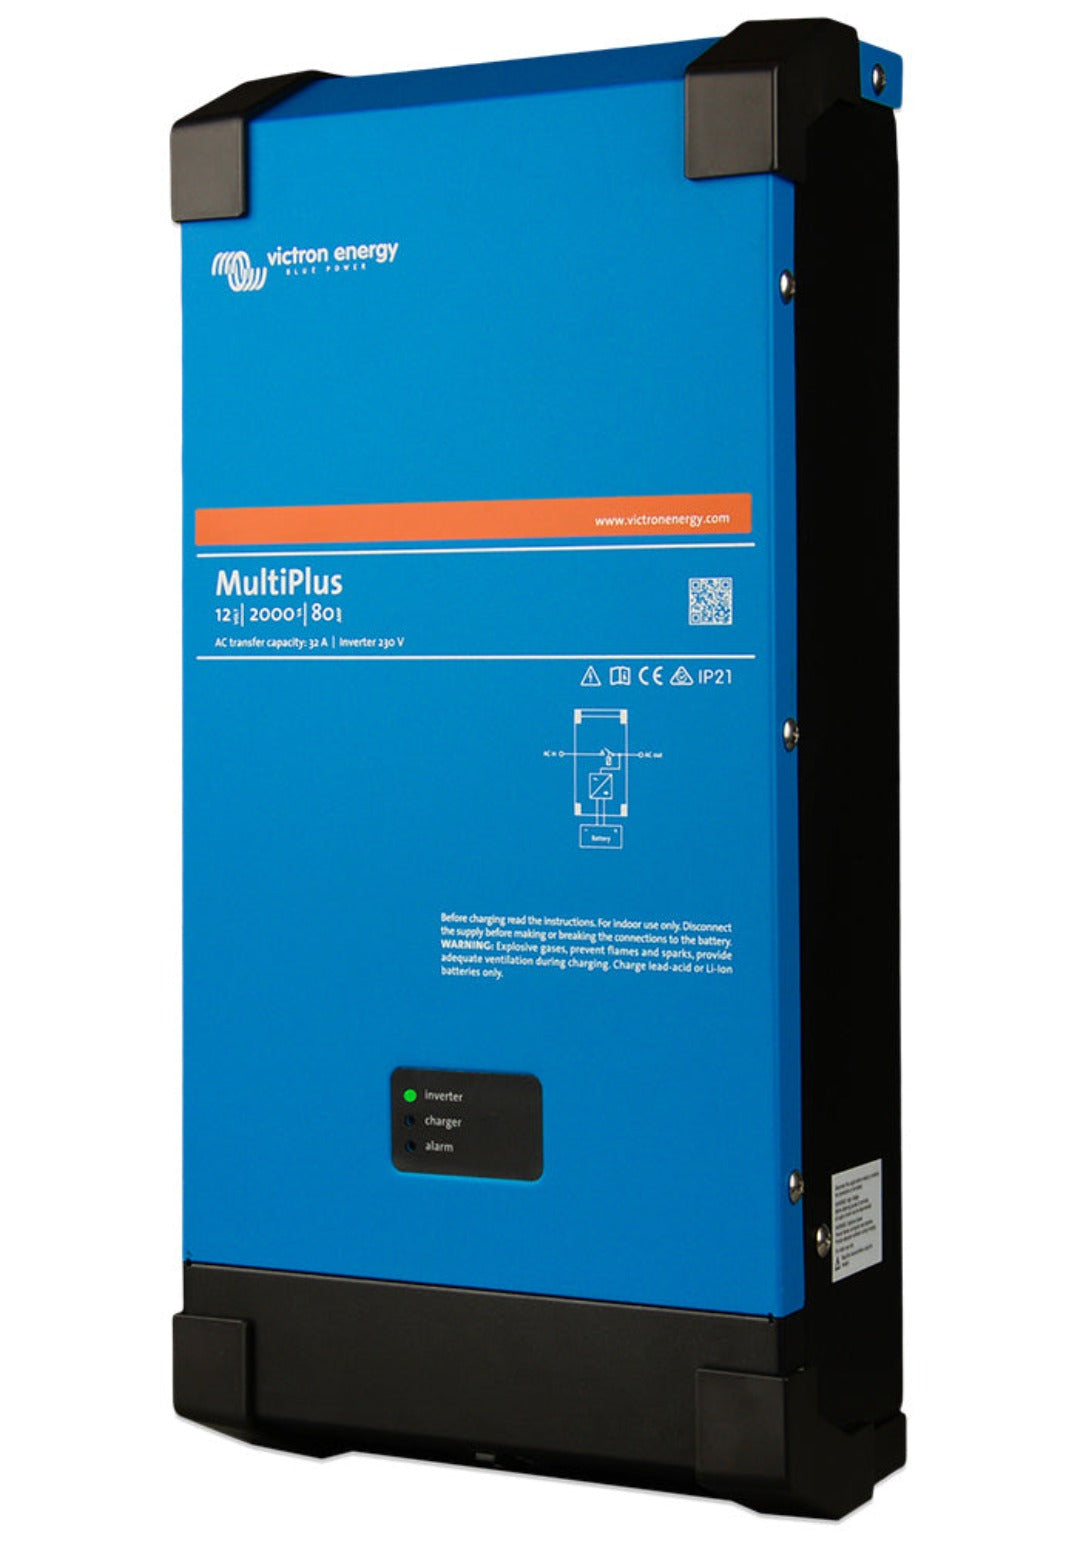 Victron MultiPlus 12/2000/80-32 230V VE.Bus Inverter/Charger (PMP122200000)